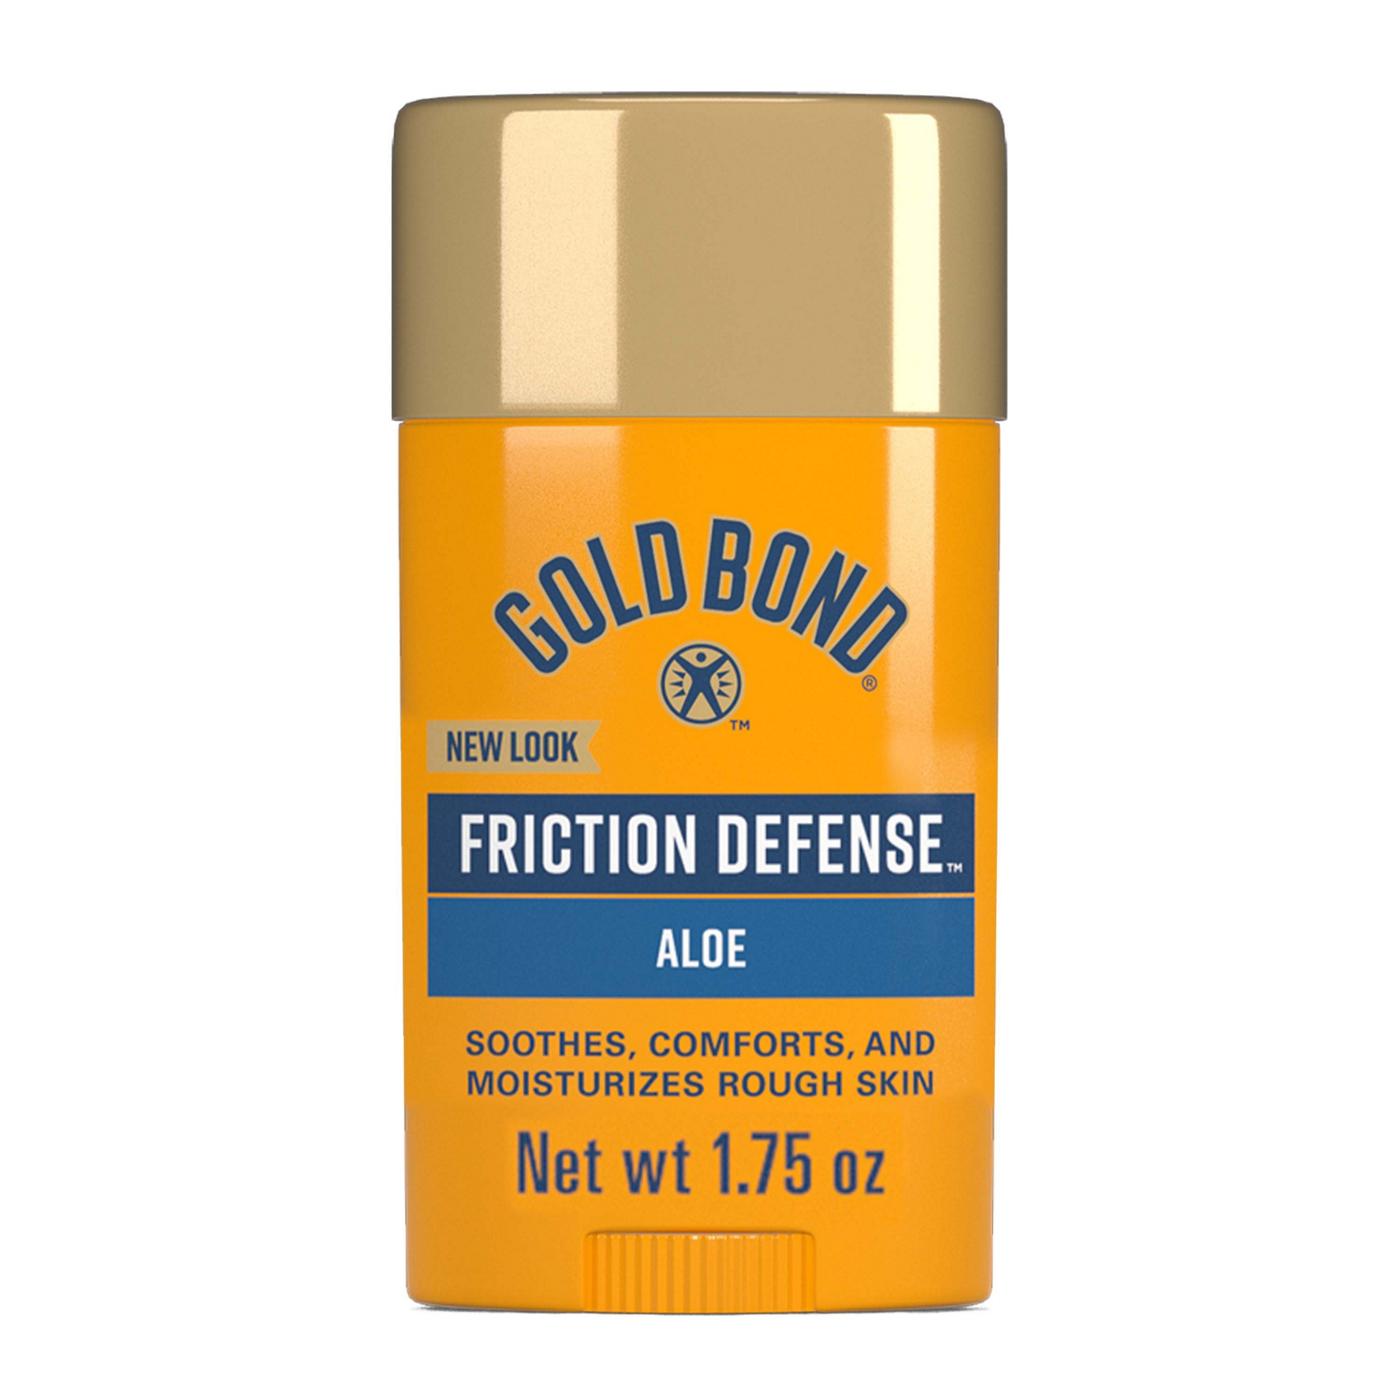 Gold Bond Friction Defense Stick - Aloe; image 1 of 7